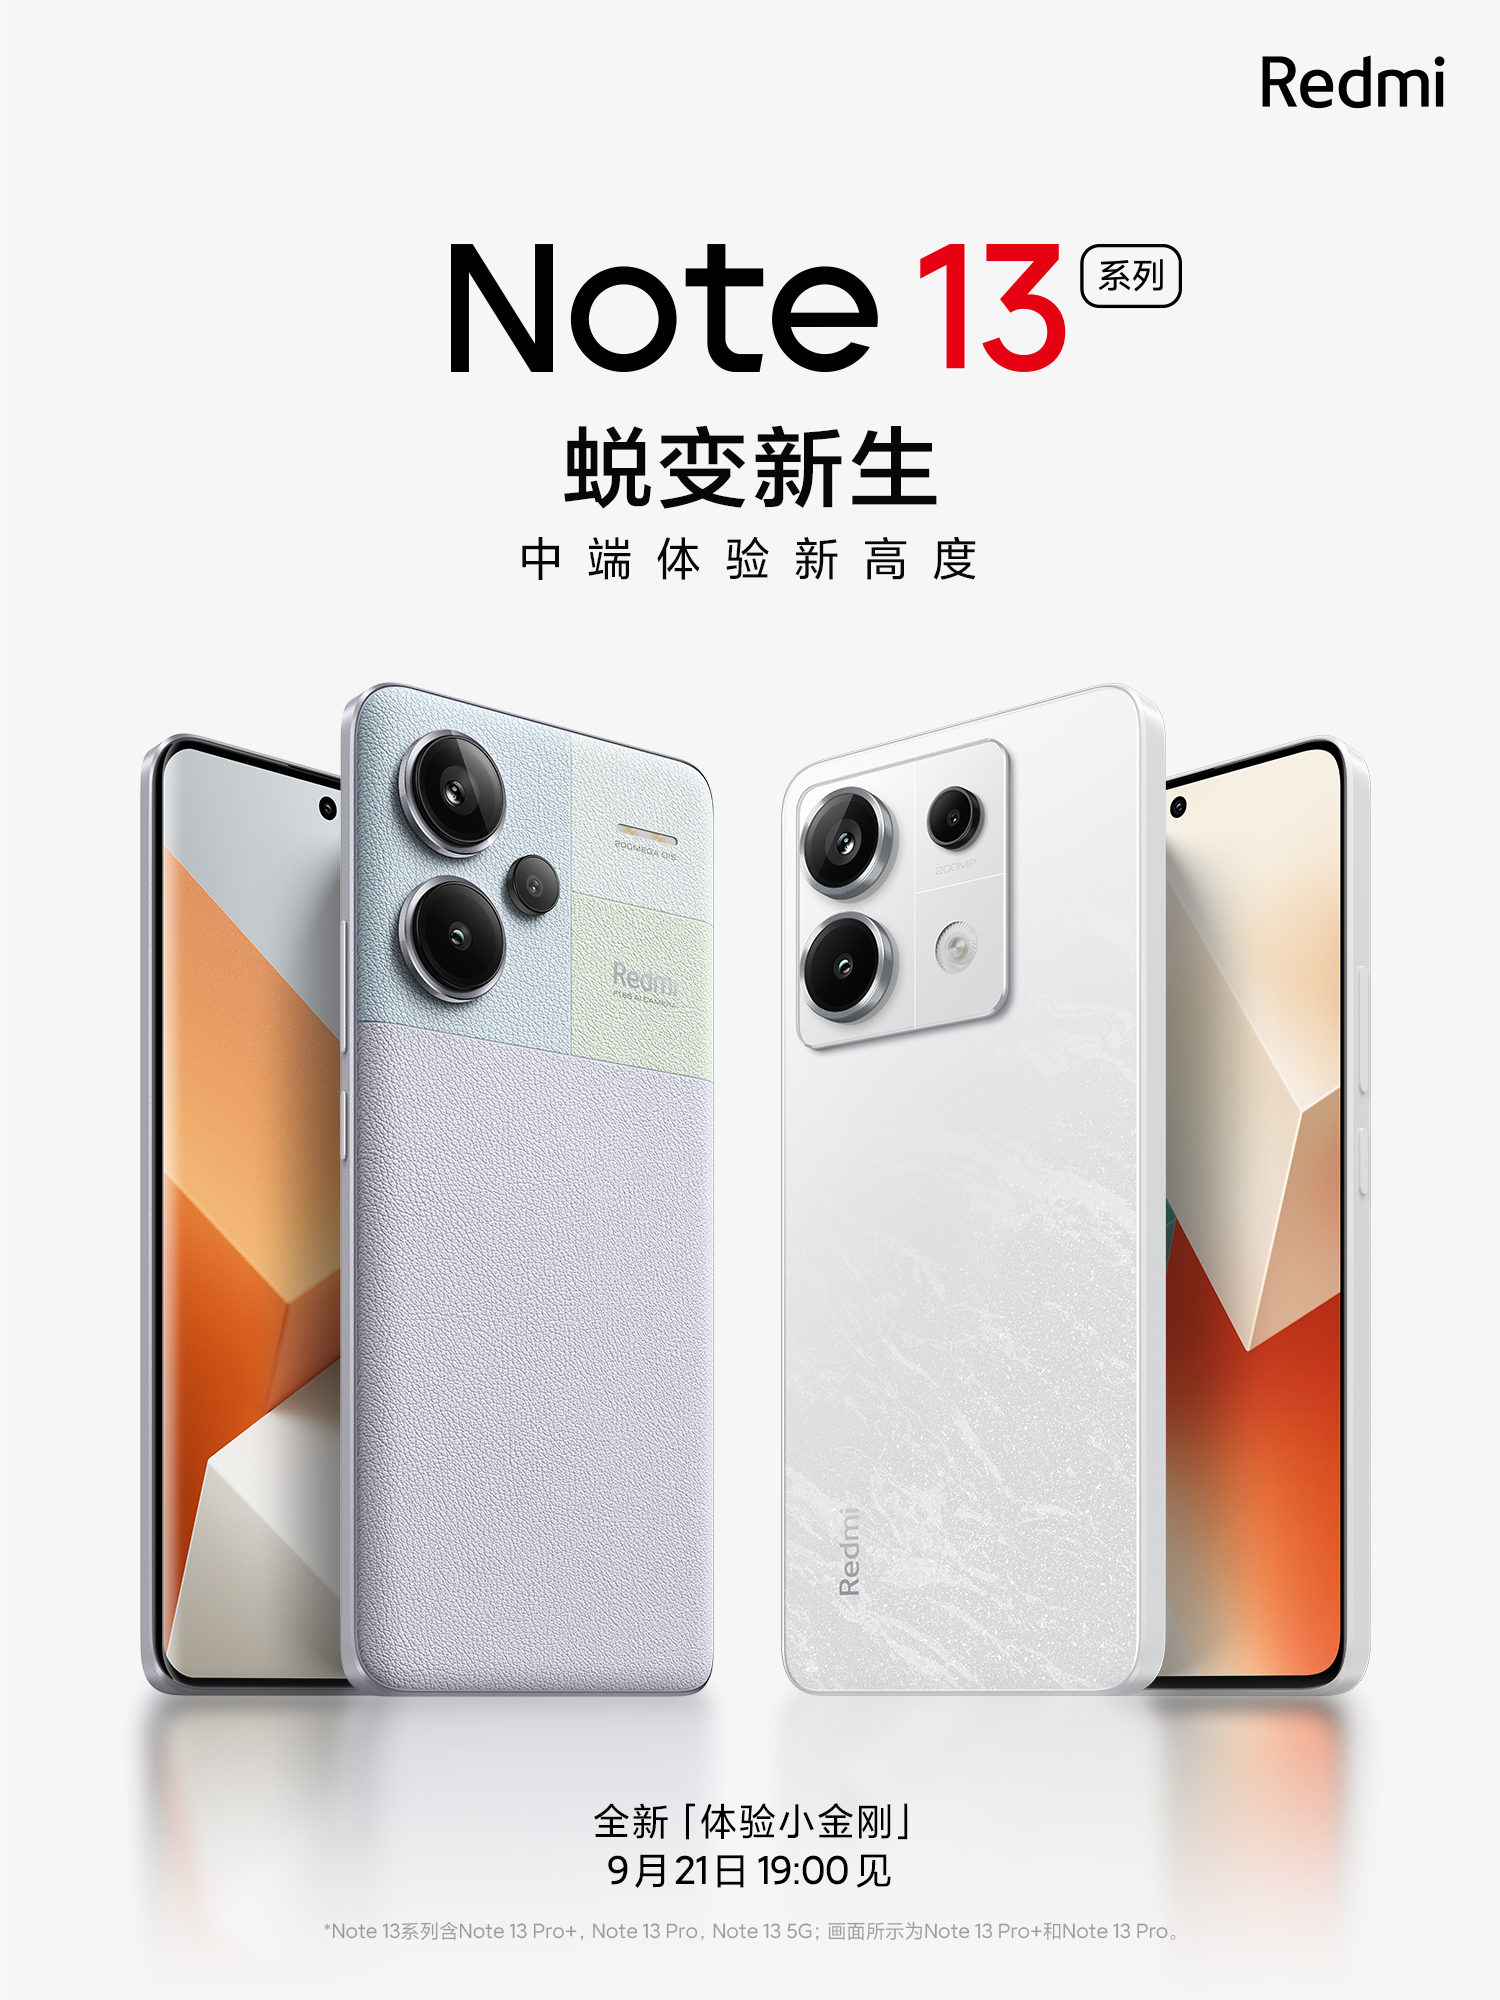 La Serie Redmi Note 13 contará con hasta seis modelos diferentes - Noticias  Xiaomi - XIAOMIADICTOS